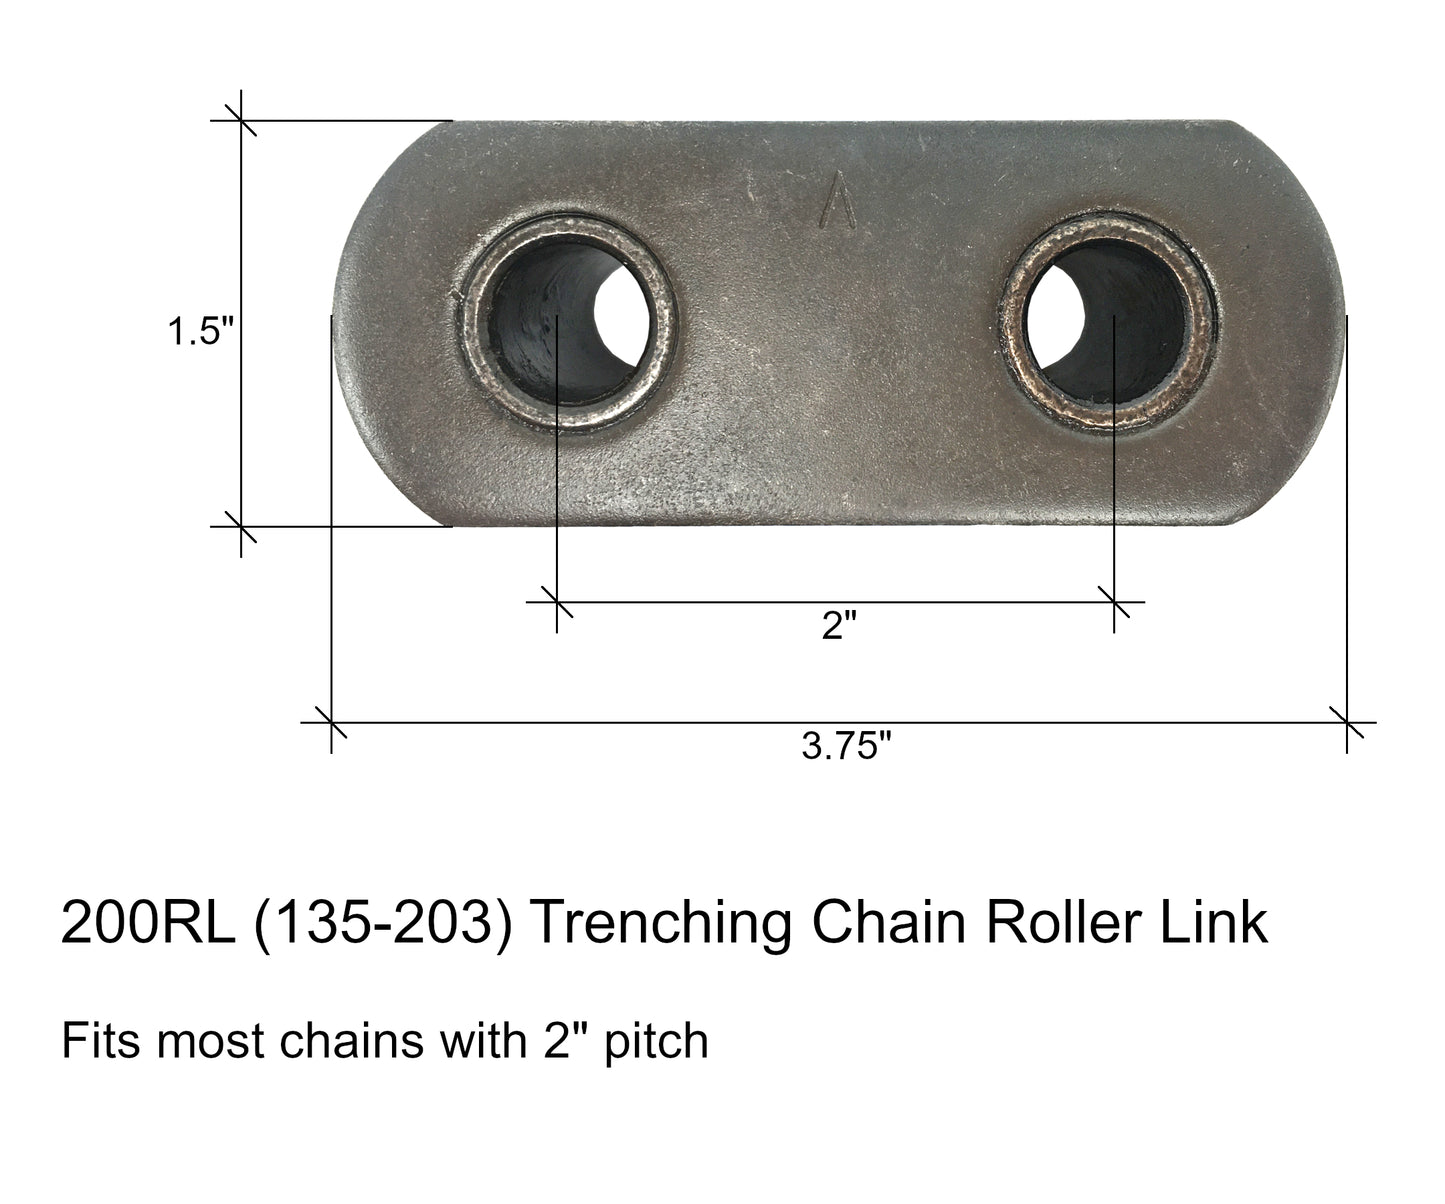 Maillon de rouleau de chaîne de tranchée, convient aux chaînes avec pas de 2" - 135-203, 200RL